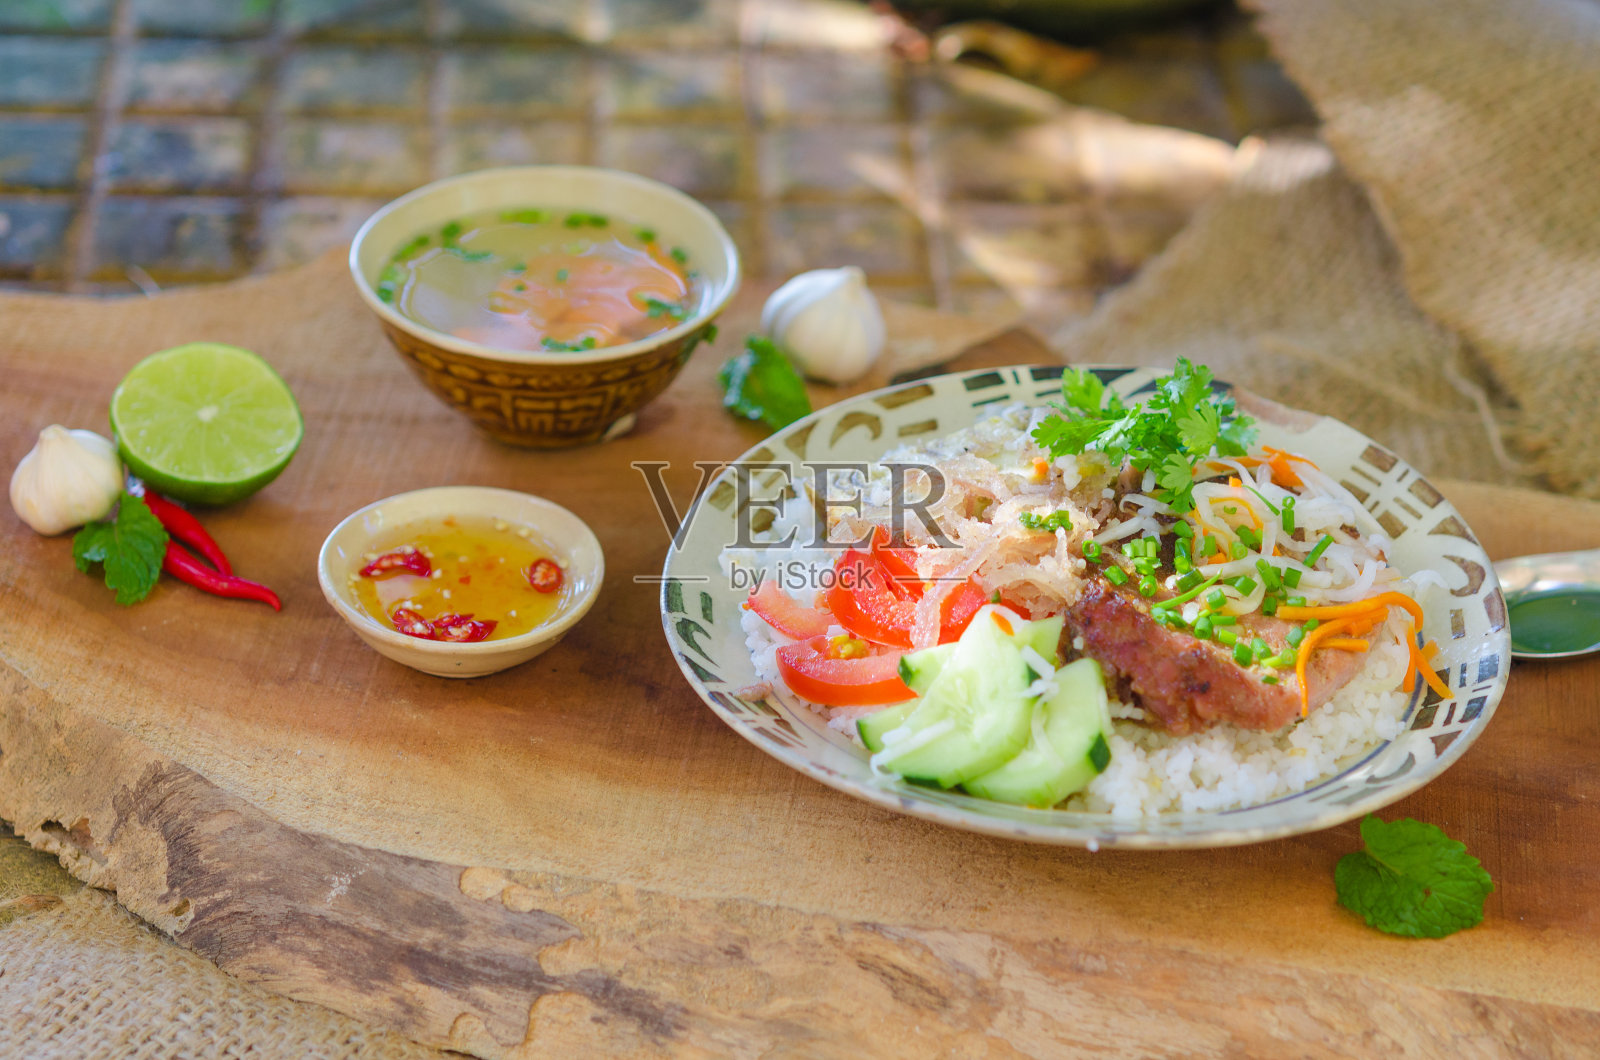 越南碎饭配烤猪排照片摄影图片